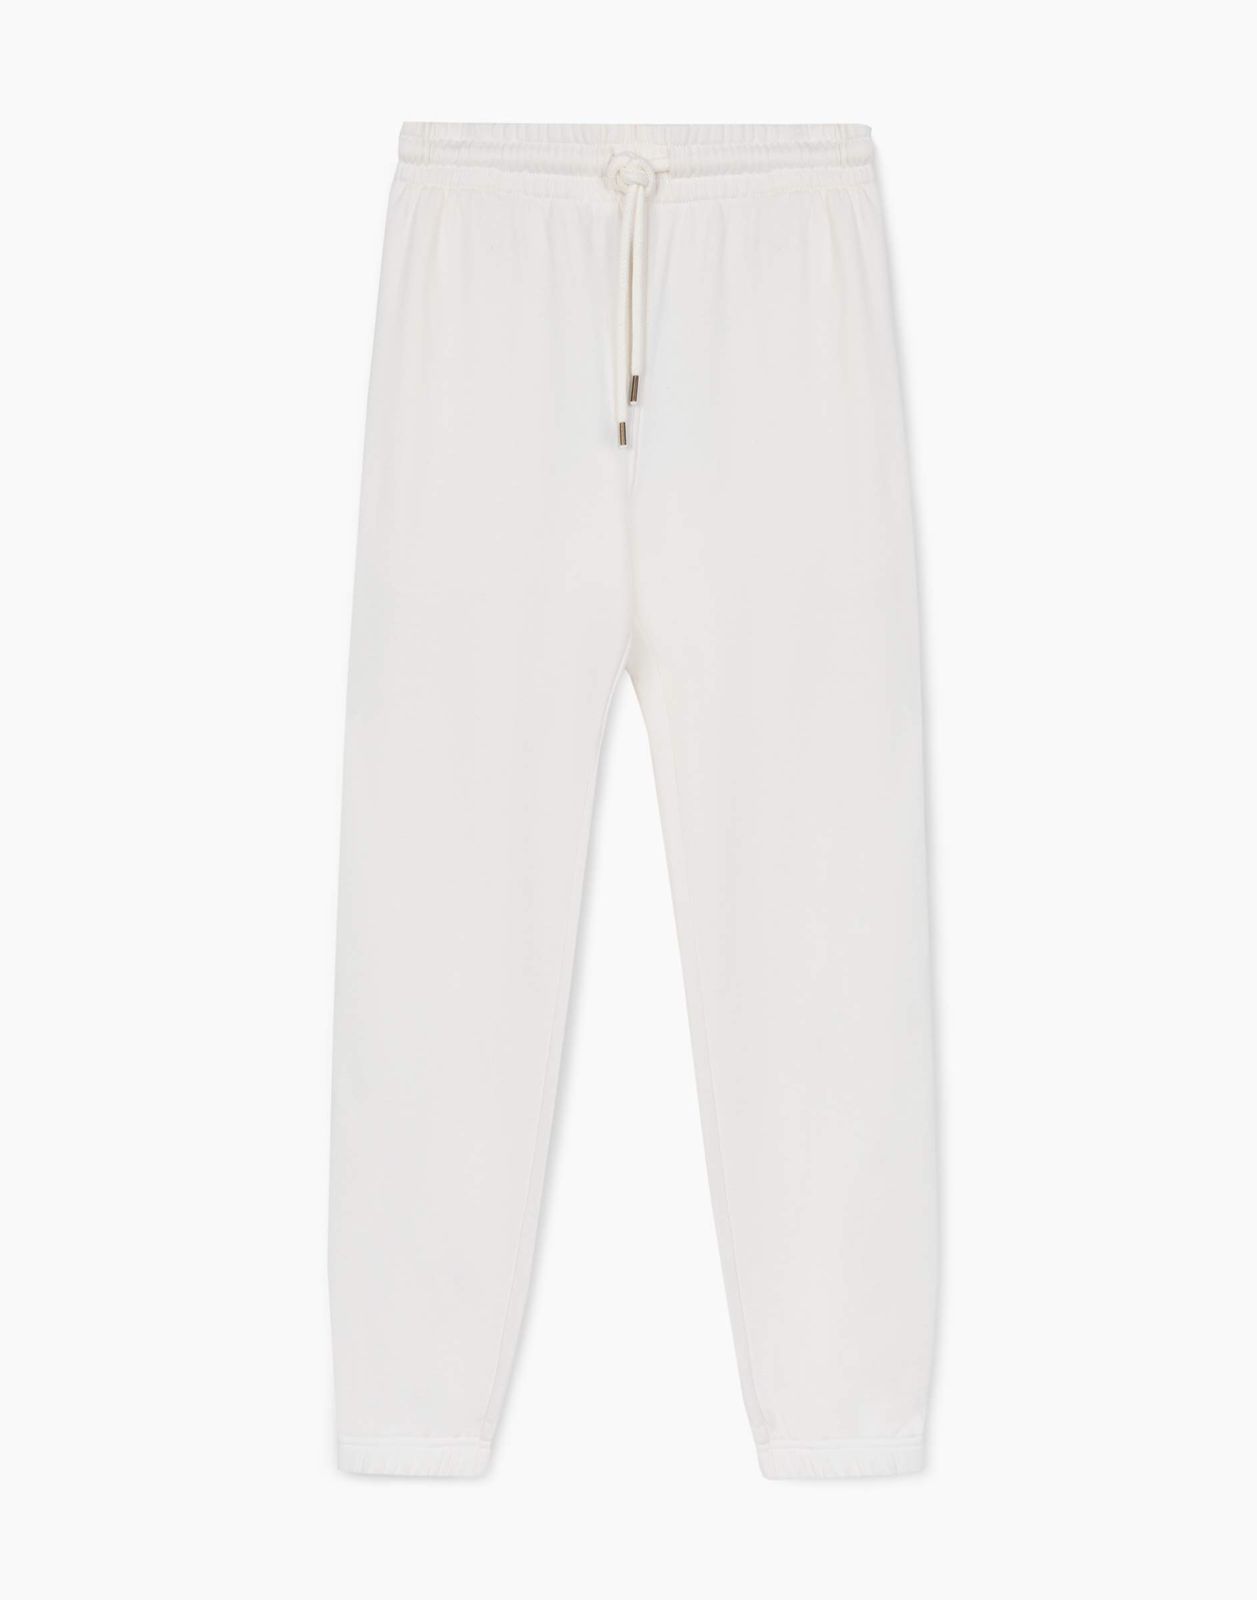 Спортивные брюки мужские Gloria Jeans BAC013026 молочный L/182